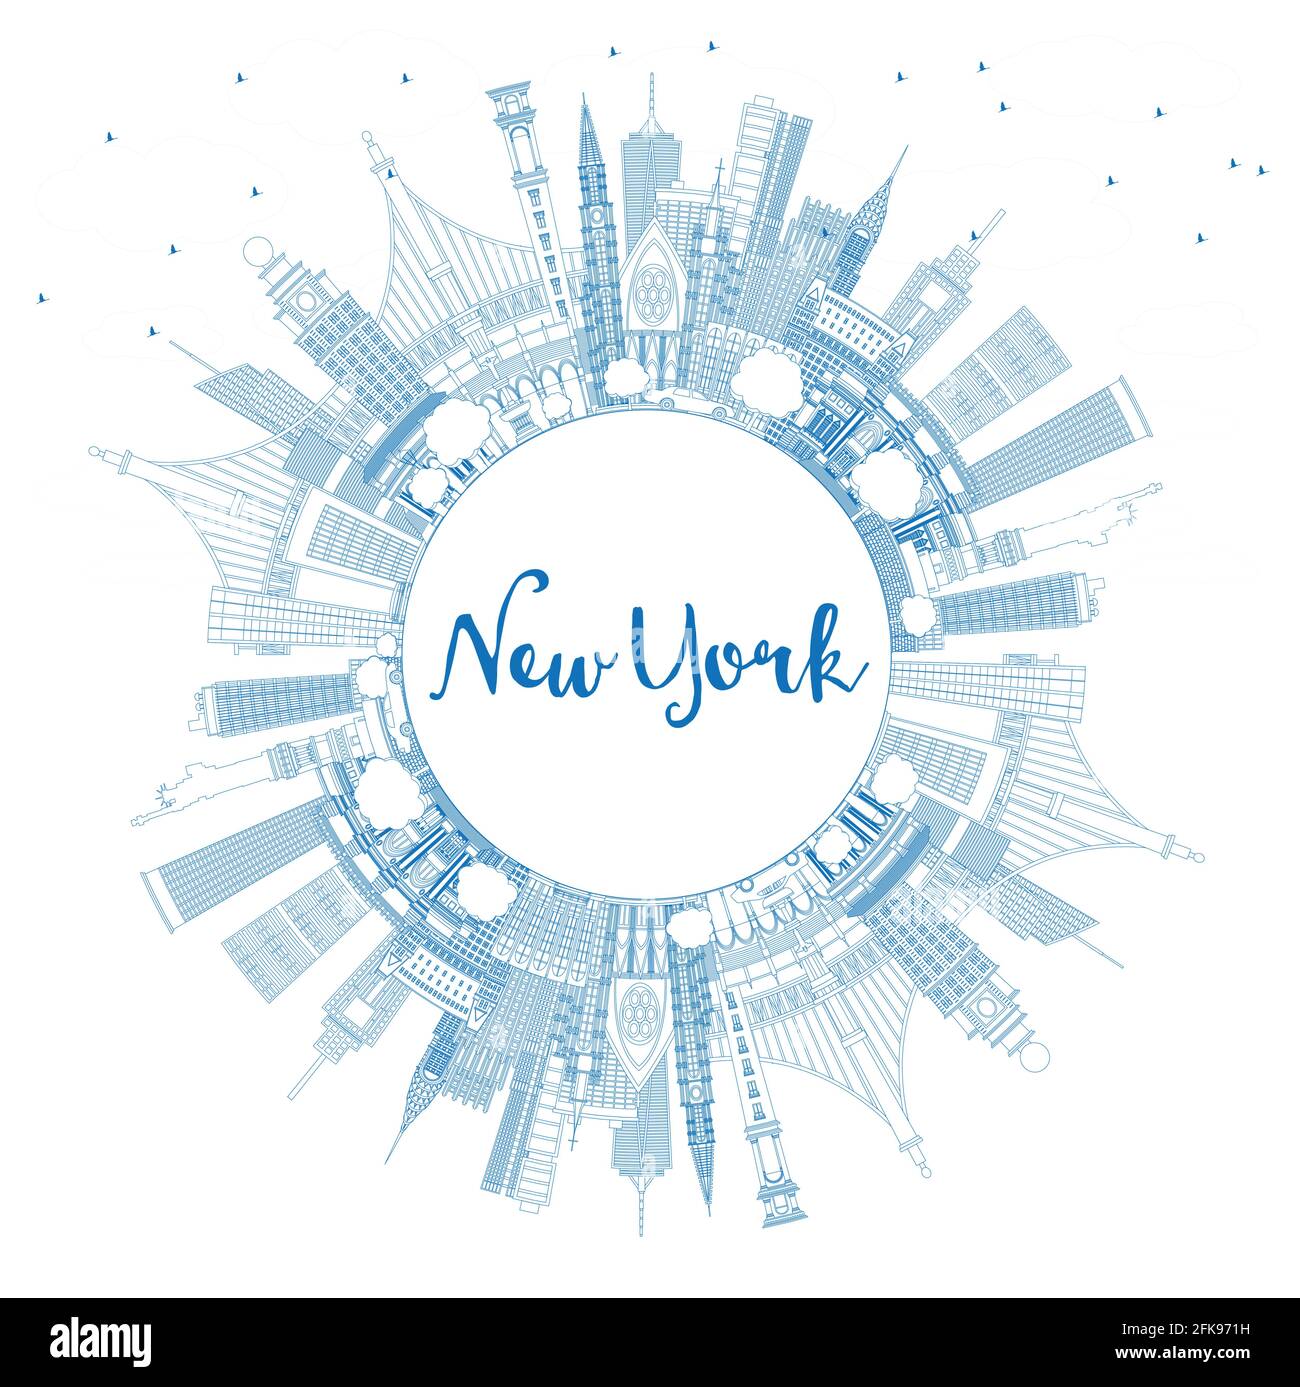 Profilo New York USA City Skyline con edifici blu e Copy Space. Illustrazione vettoriale. Il paesaggio urbano di New York con i punti di riferimento. Illustrazione Vettoriale